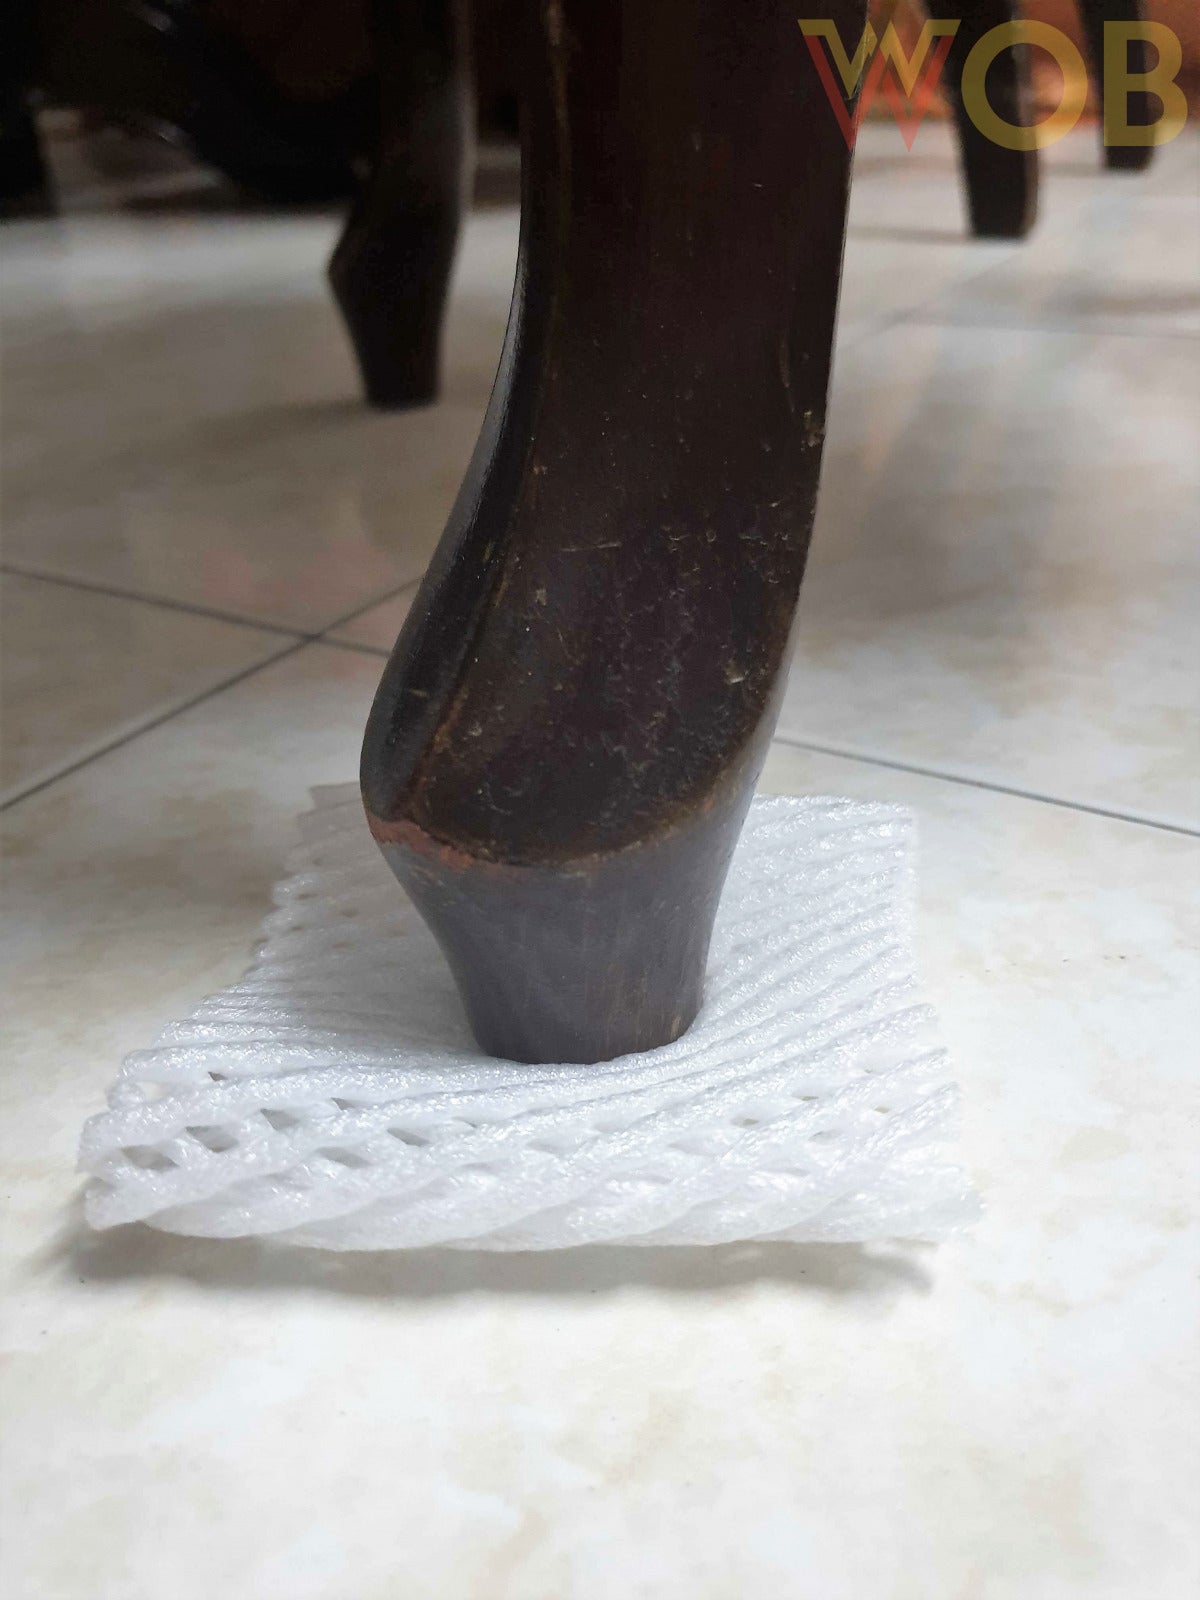 foam wrapper hack chair leg pad